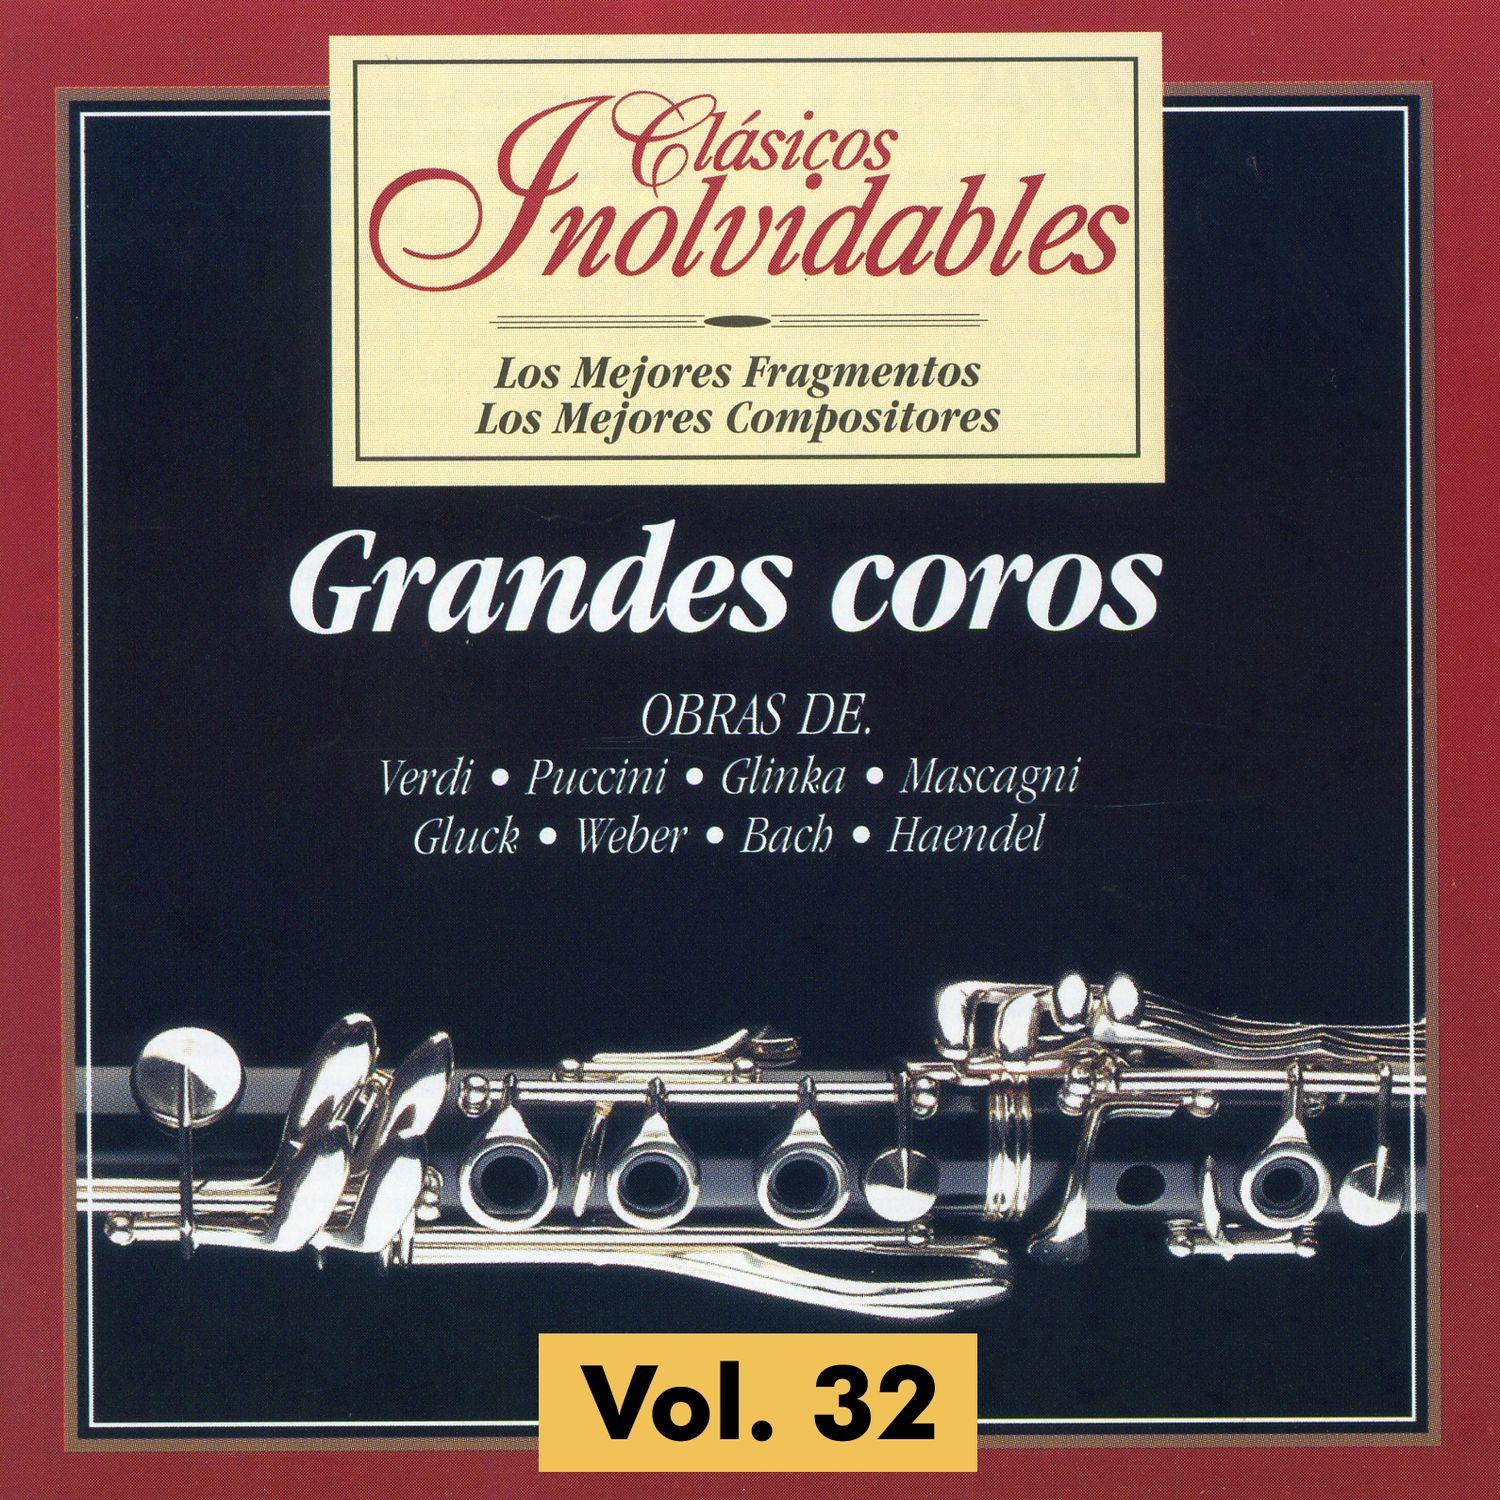 Cla sicos Inolvidables Vol. 32, Grandes Coros